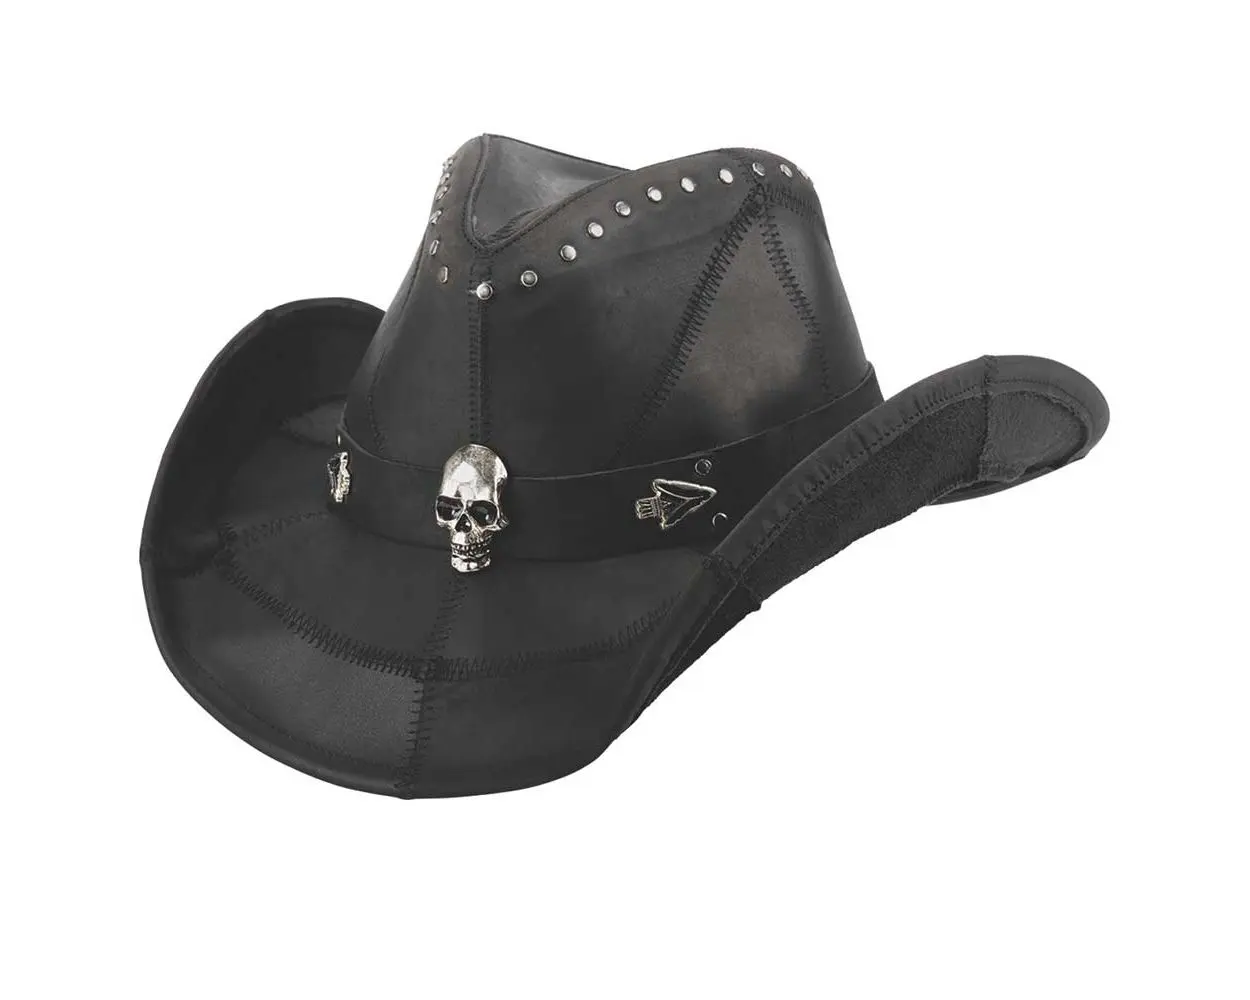 Cowboy-Hut aus echtem Leder im Vintage-Stil verrückte Kuh Premium-Qualitätsleder mit individuellem Design klassische alte Party-Hüte